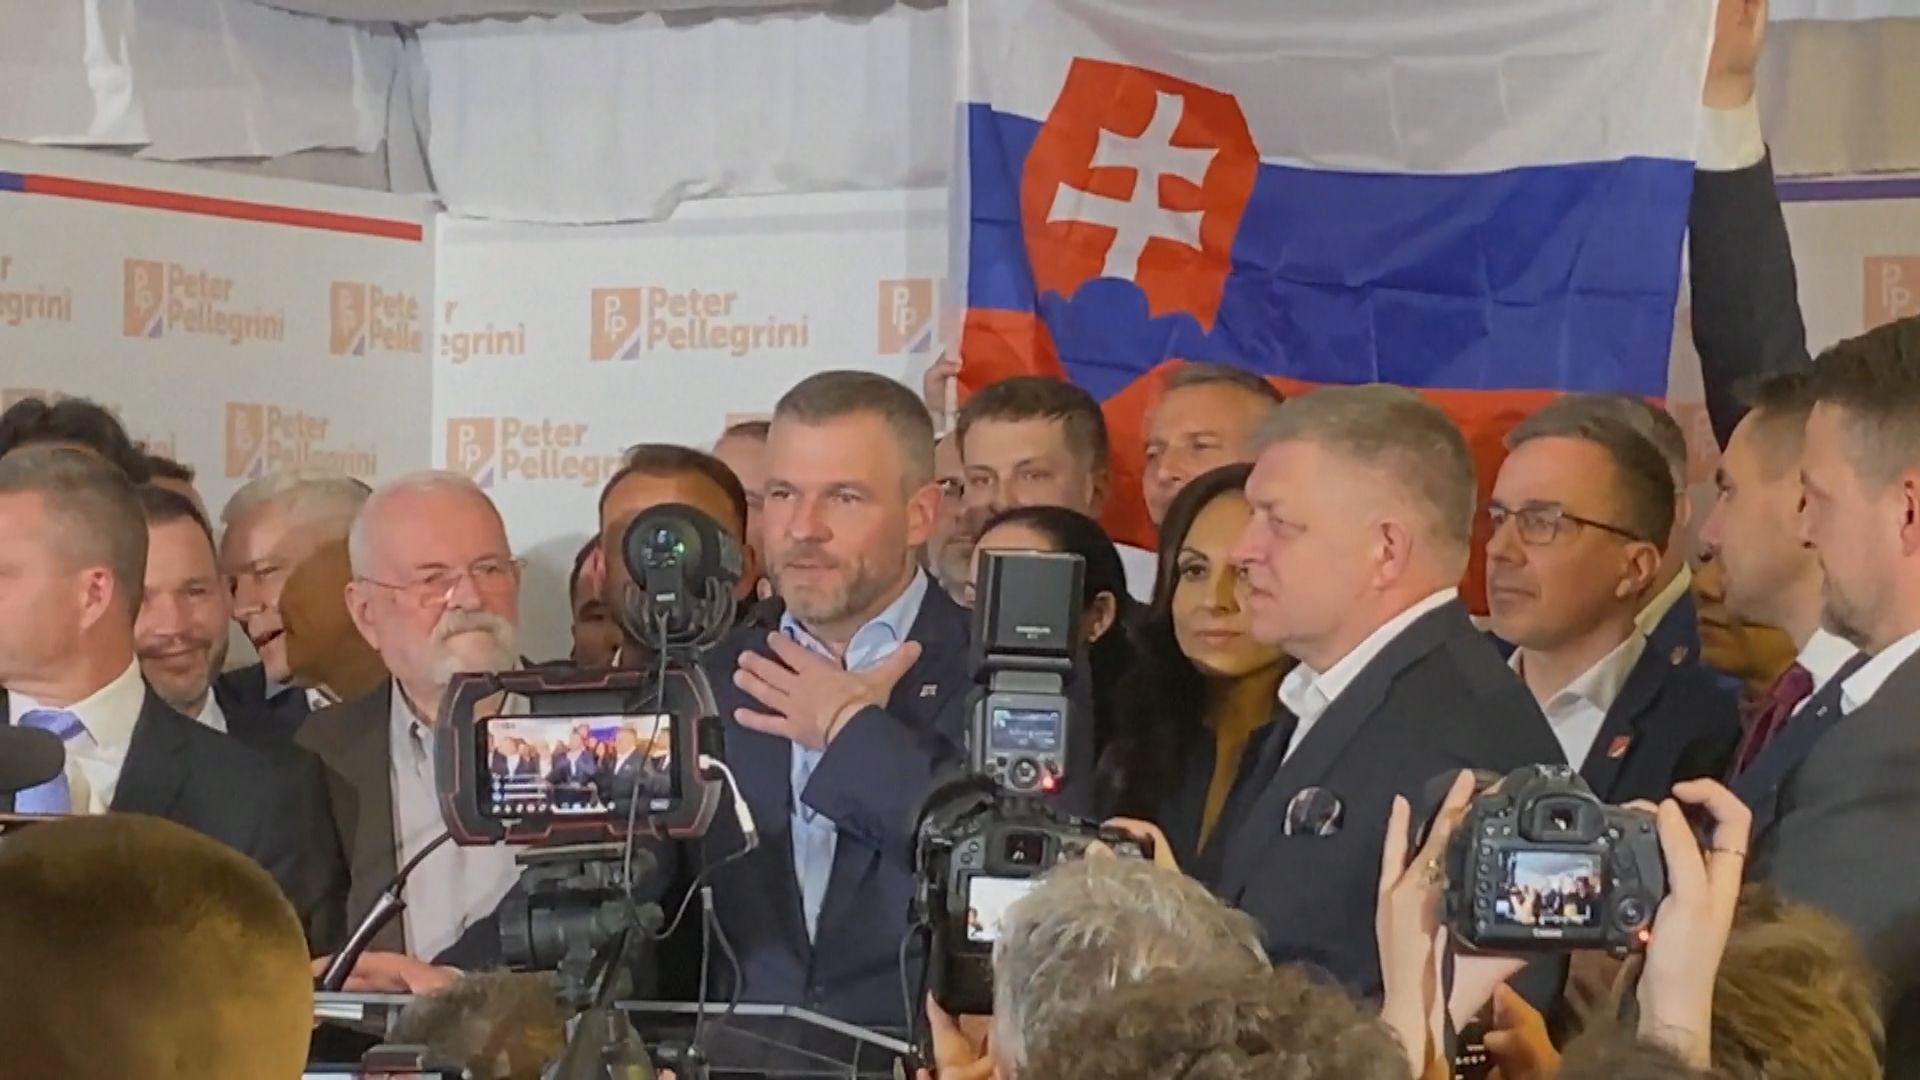 斯洛伐克總統選舉 國會議長佩列格里尼勝出